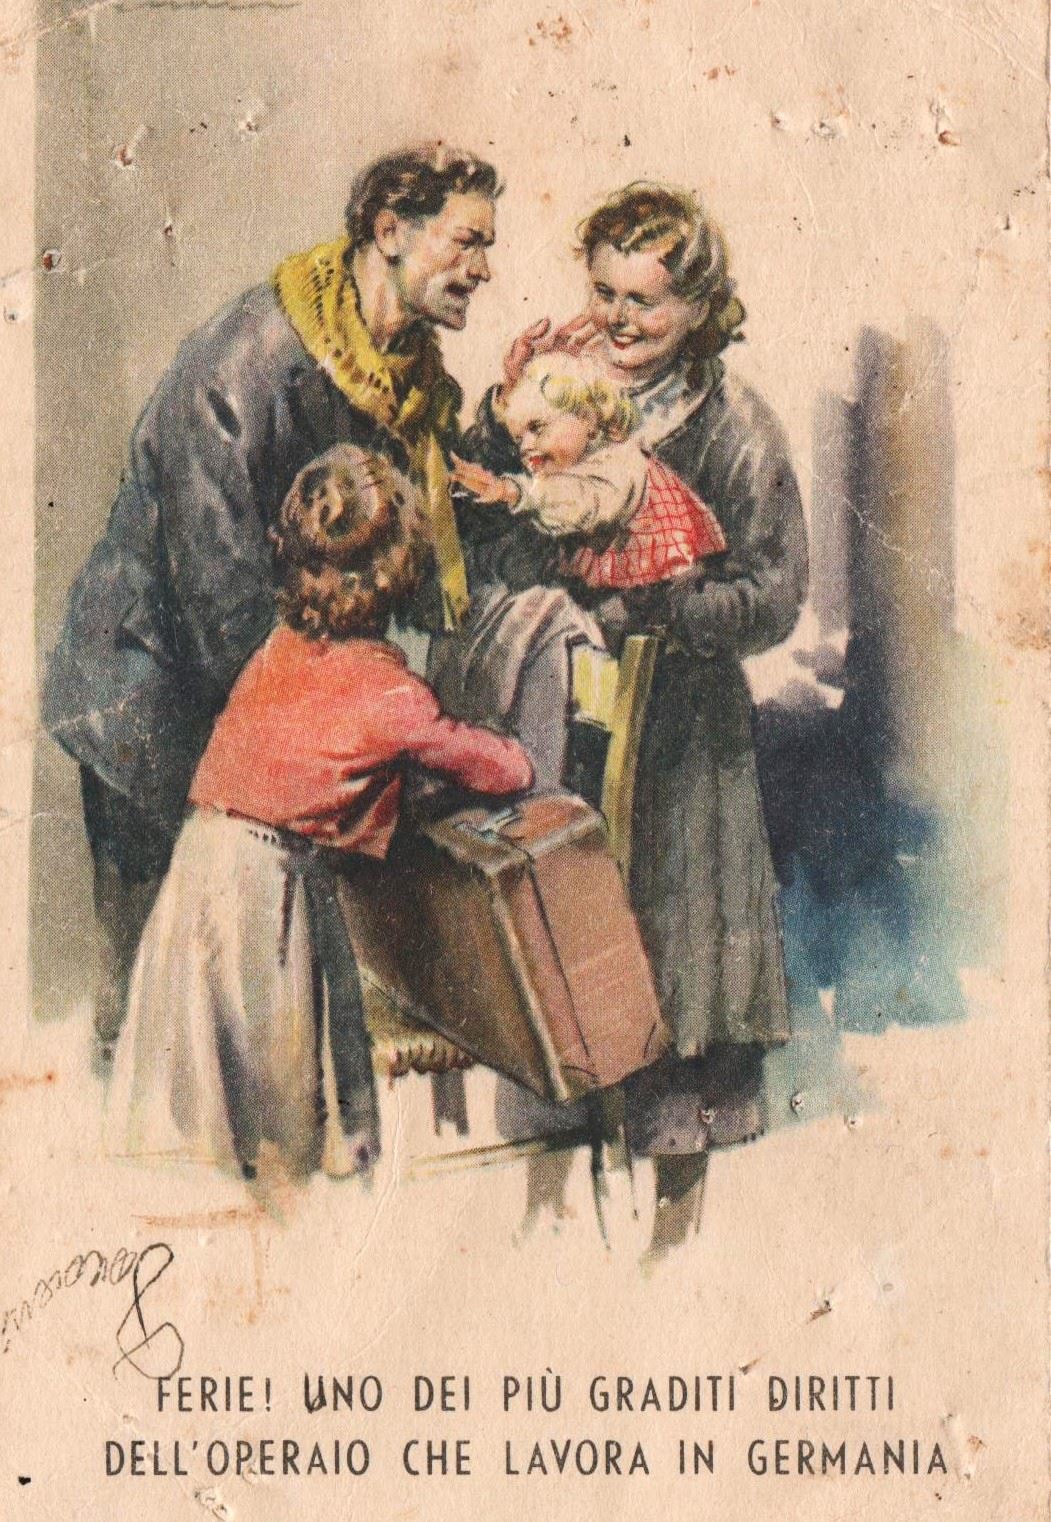 La cartolina inviata alla famiglia prima di essere deportato nel campo nazista in Germania